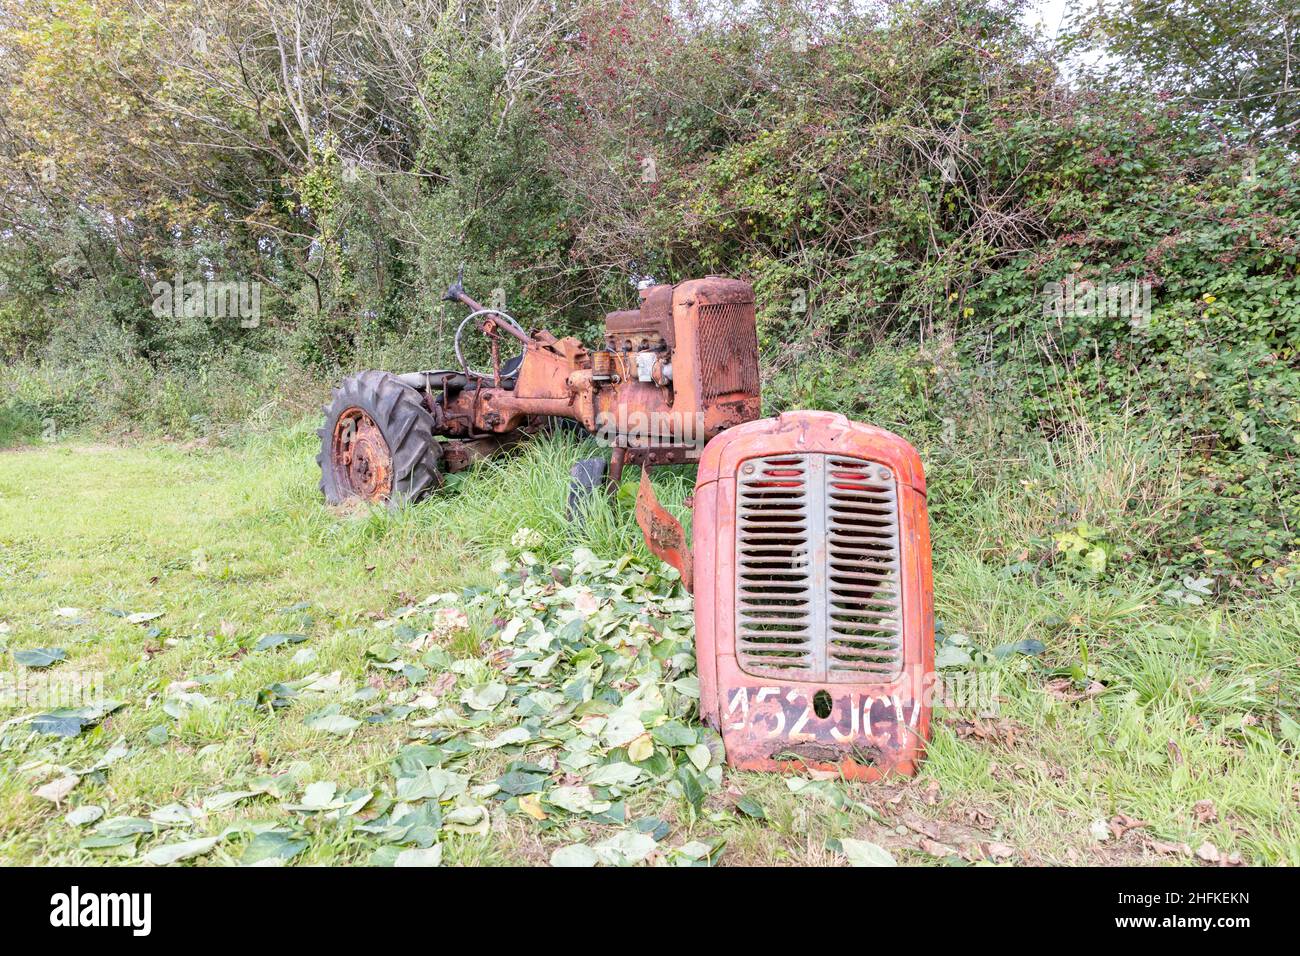 Tractor, rusty tractor, tractor, tractor graveyard, rusted tractor,farm tractor,classic tractor,oxidised,rusty,rusted,tractor,Cornwall, UK, England Stock Photo